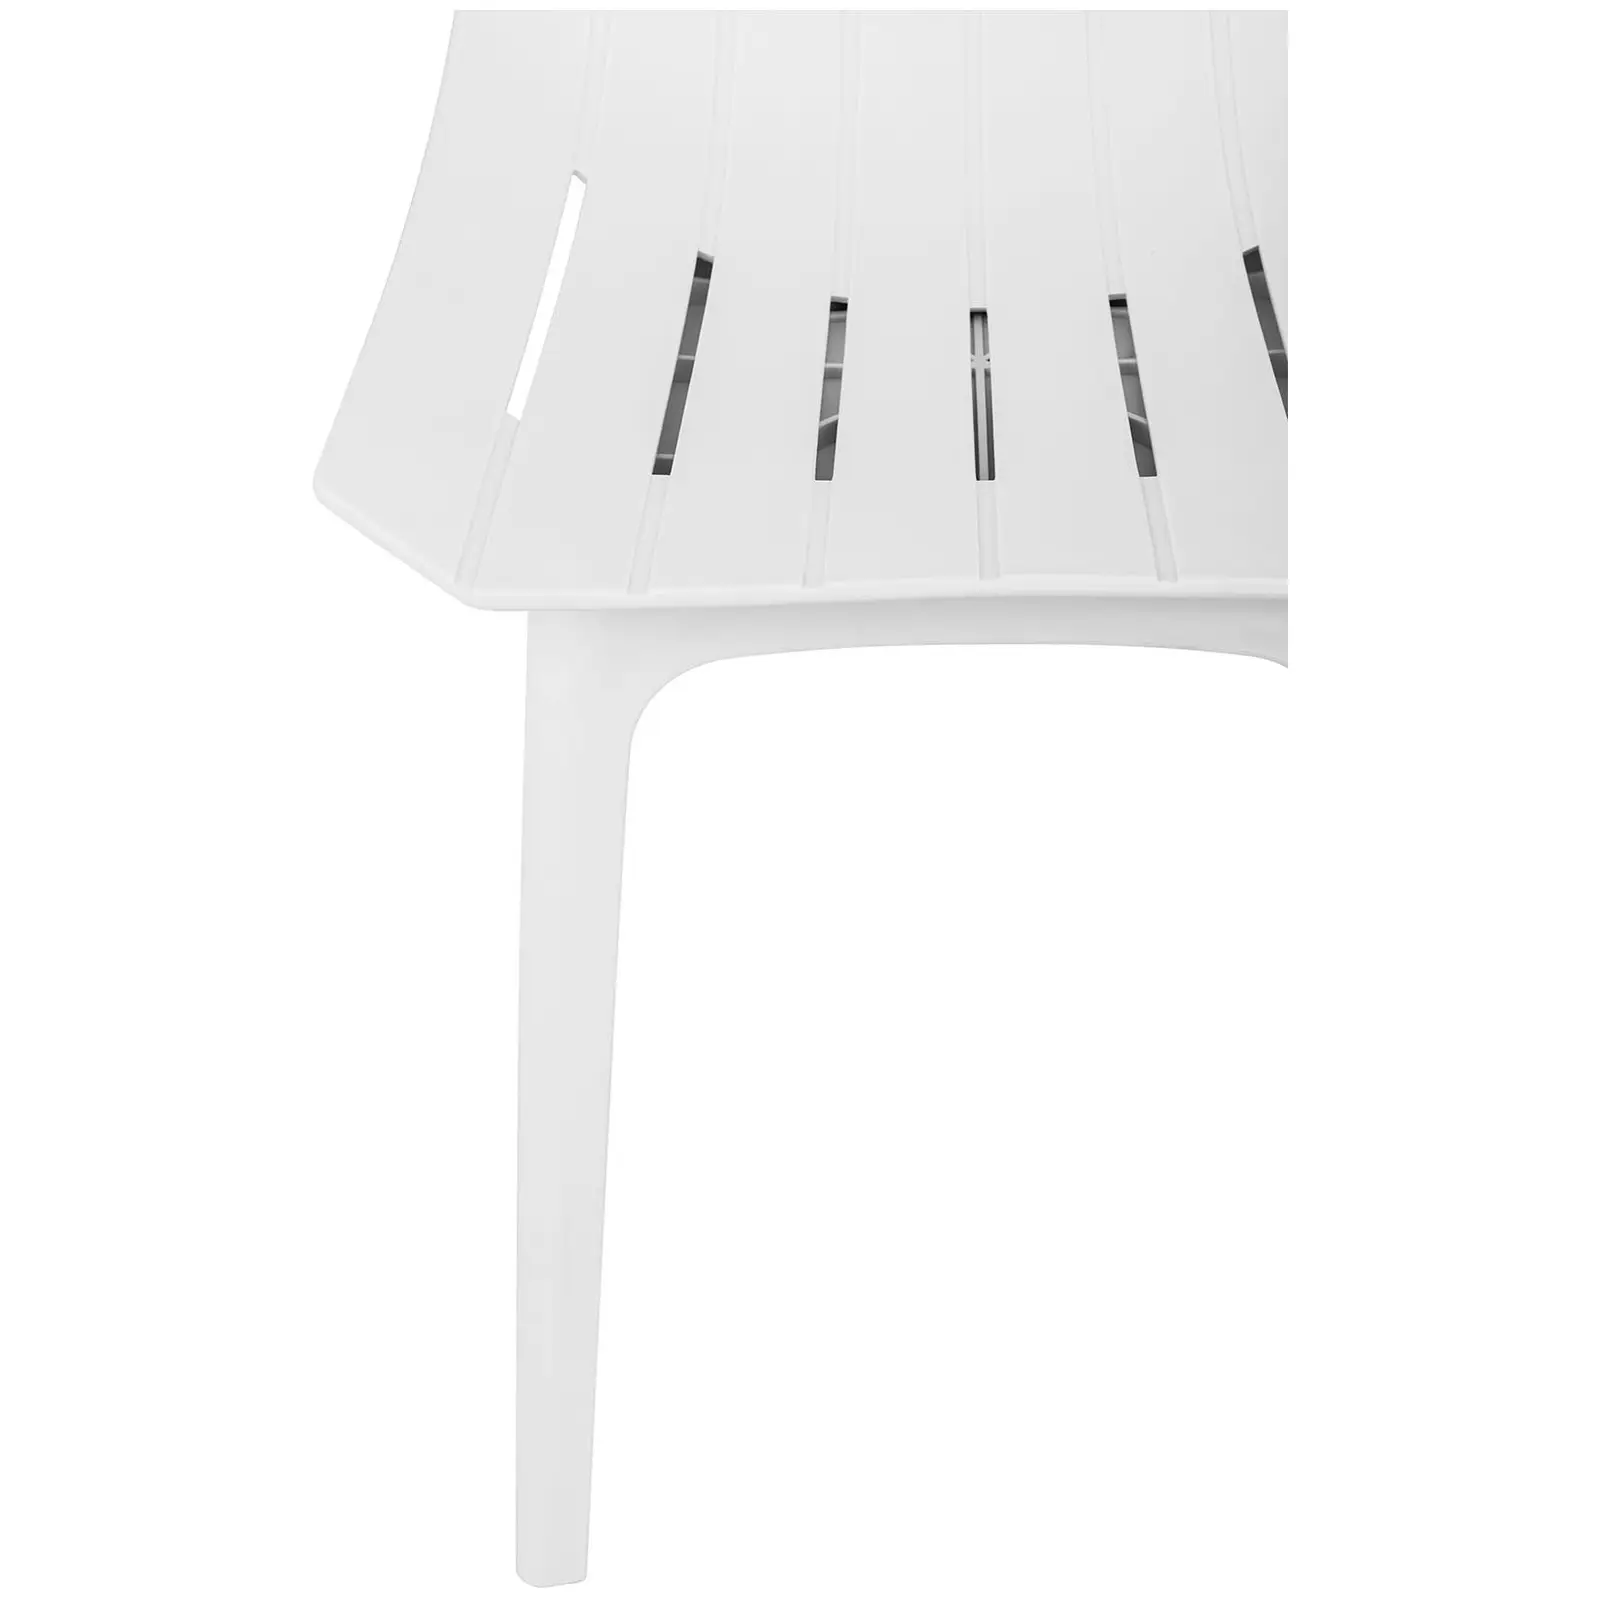 Chaise - Lot de 2 - 150 kg max. - Surface d'assise de 47 x 42 cm - Coloris blanc